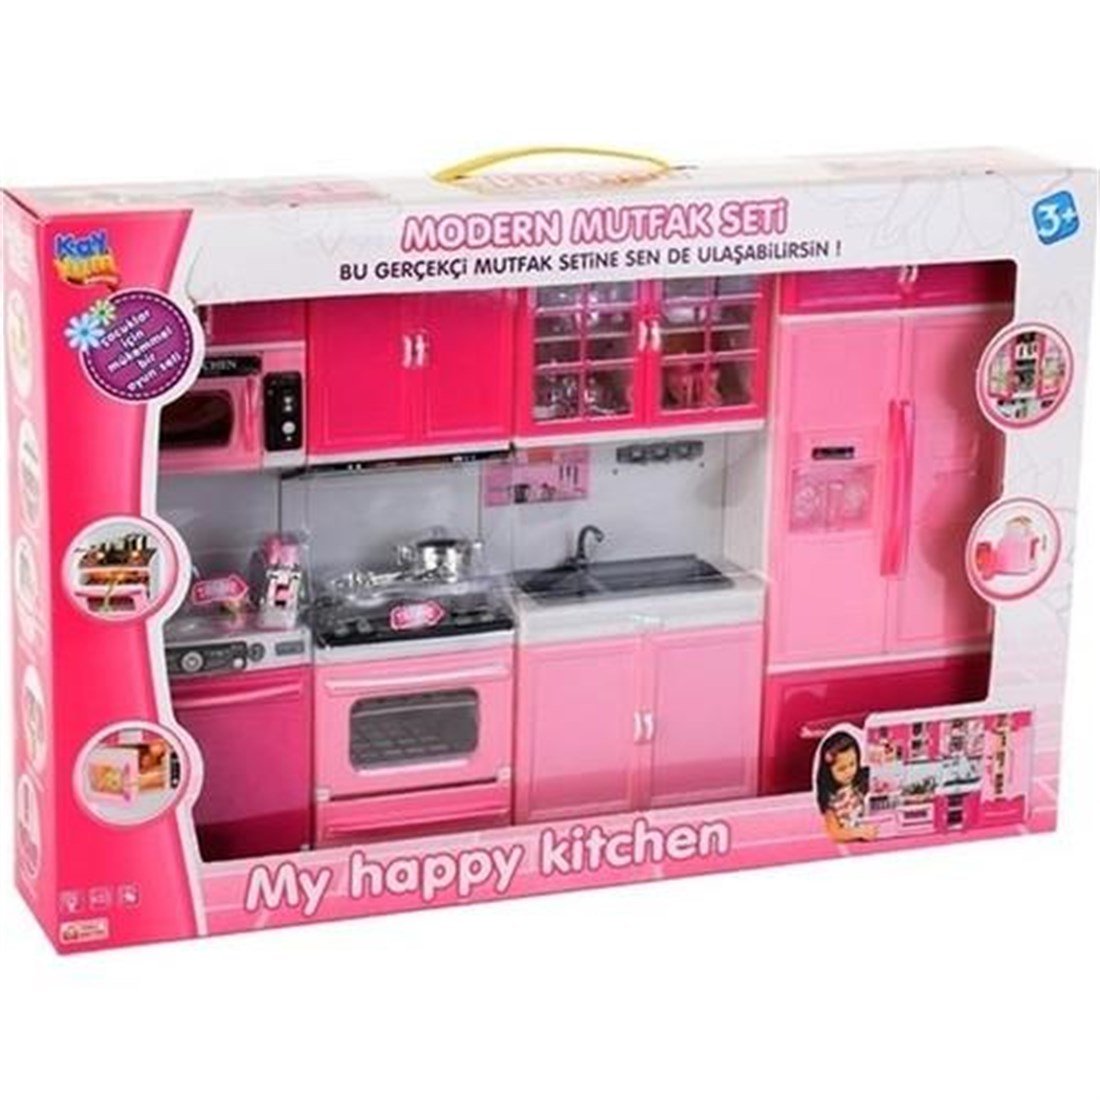 4 lü Oyuncak Mutfak Seti - Sesli Işıklı Mutfak Seti - Kız Evcilik  Oyuncakları - Oyuncak Mutfak